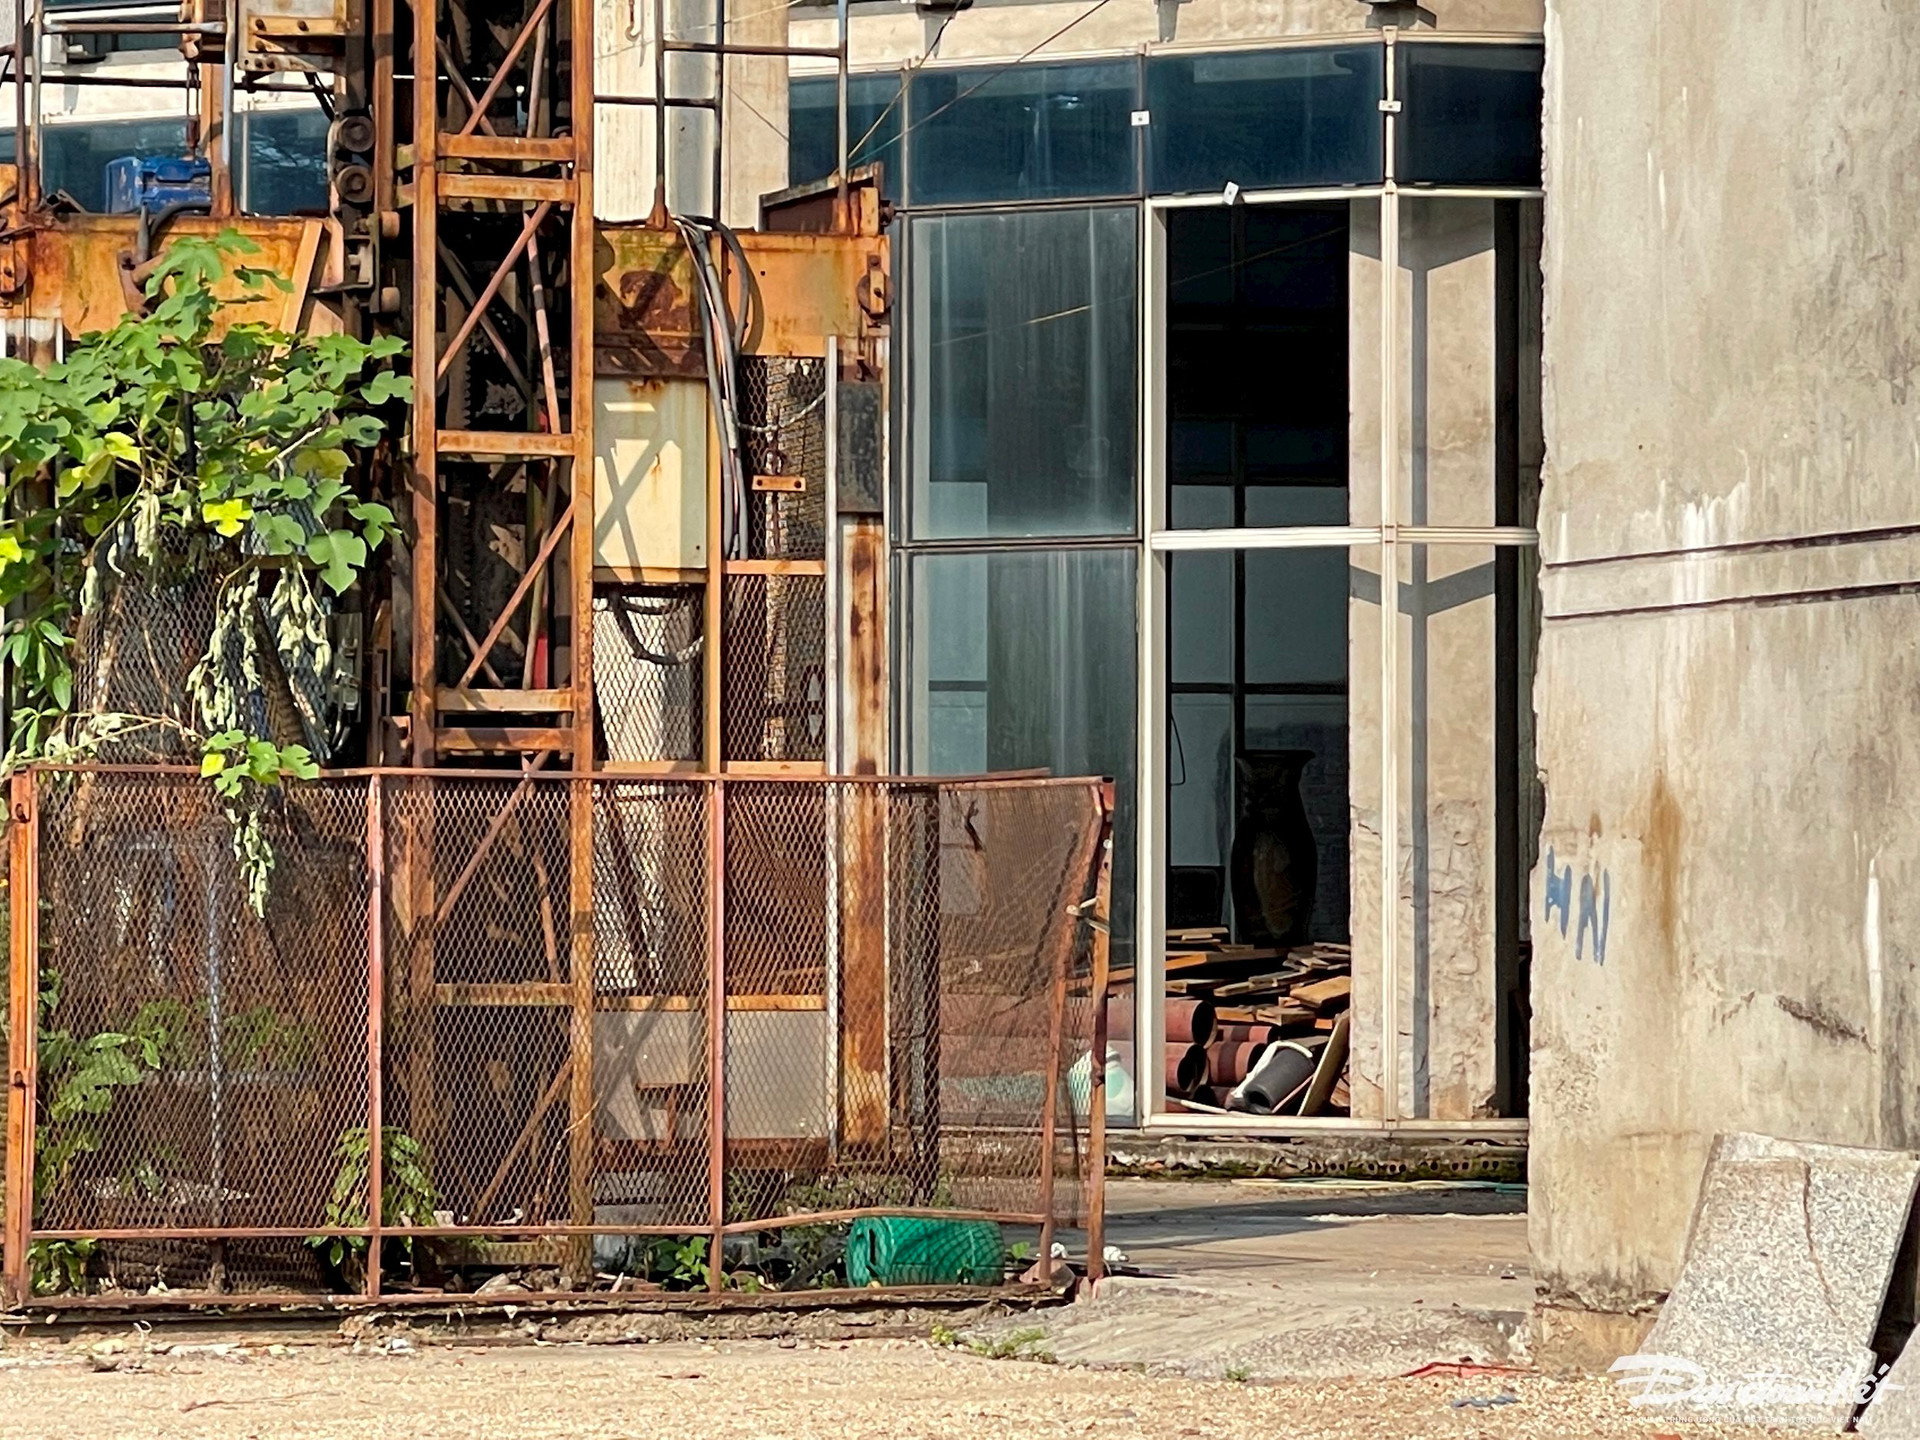 Hà Nội: Bệnh viện quốc tế 50 triệu USD bị bỏ hoang hơn 2 thập kỷ - Ảnh 11.